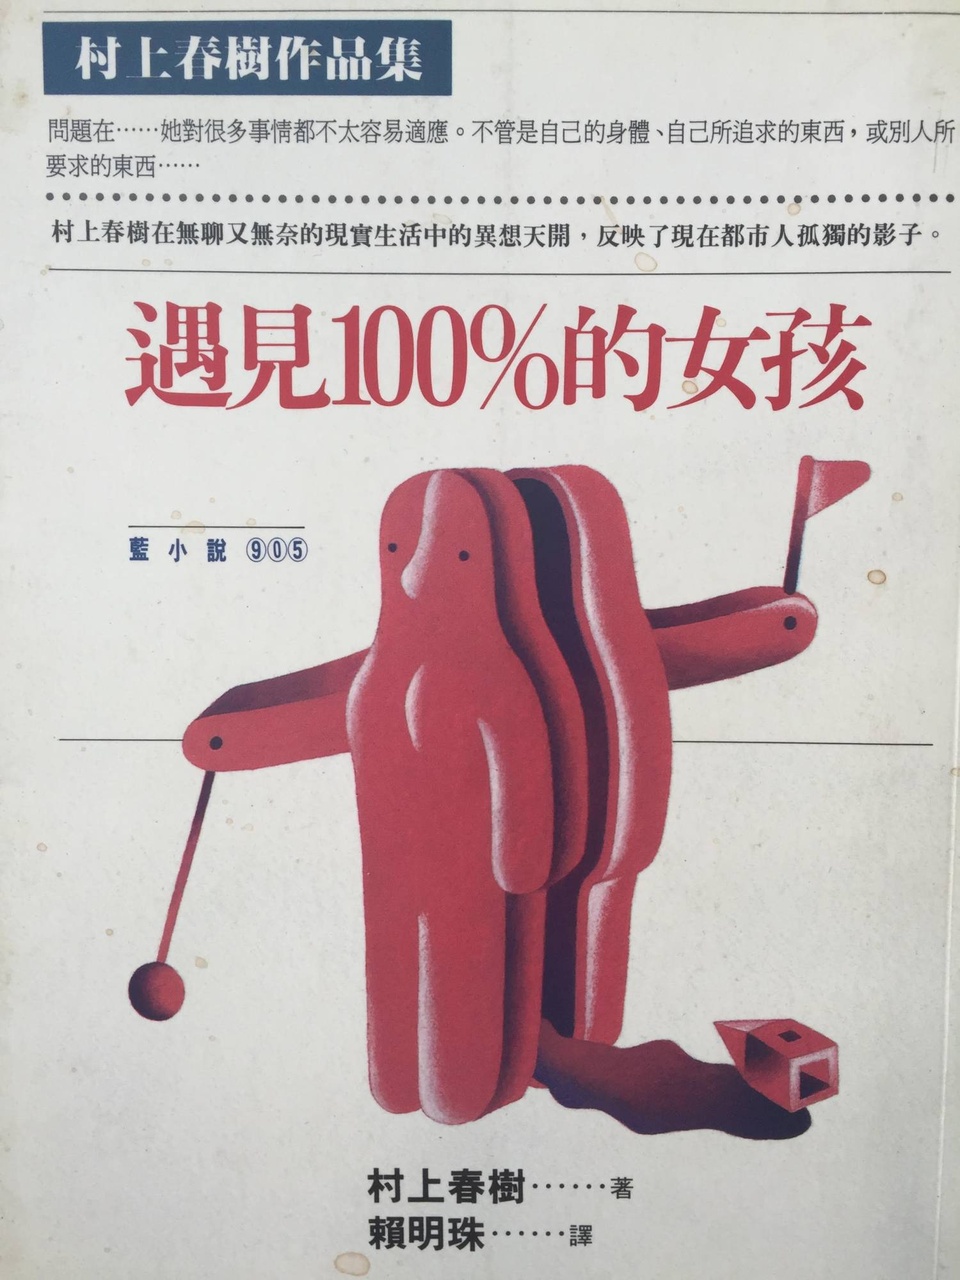 村上春樹小說於1986年7月1日首次由賴明珠中譯、台北時報出版，之後，便是歷史。 (@KM Cheung)